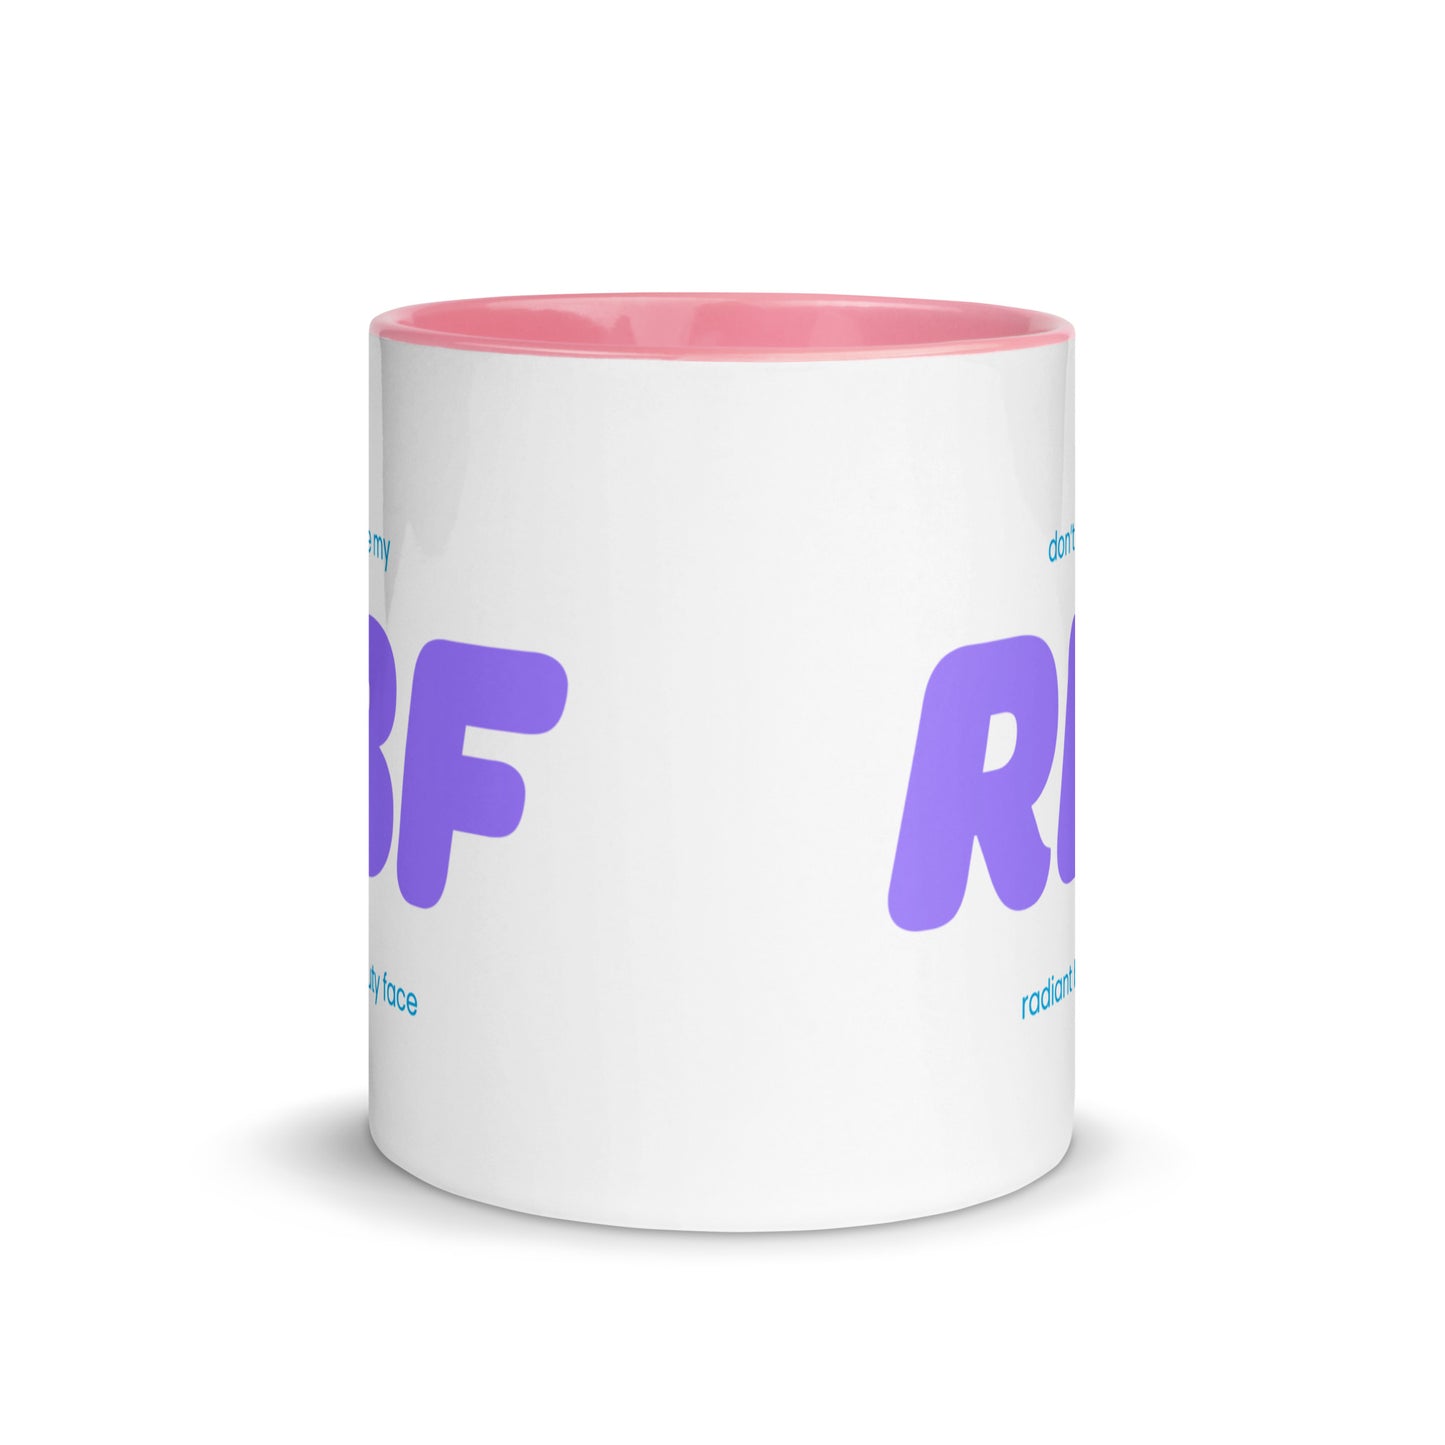 RSN - RBF Colored Mug